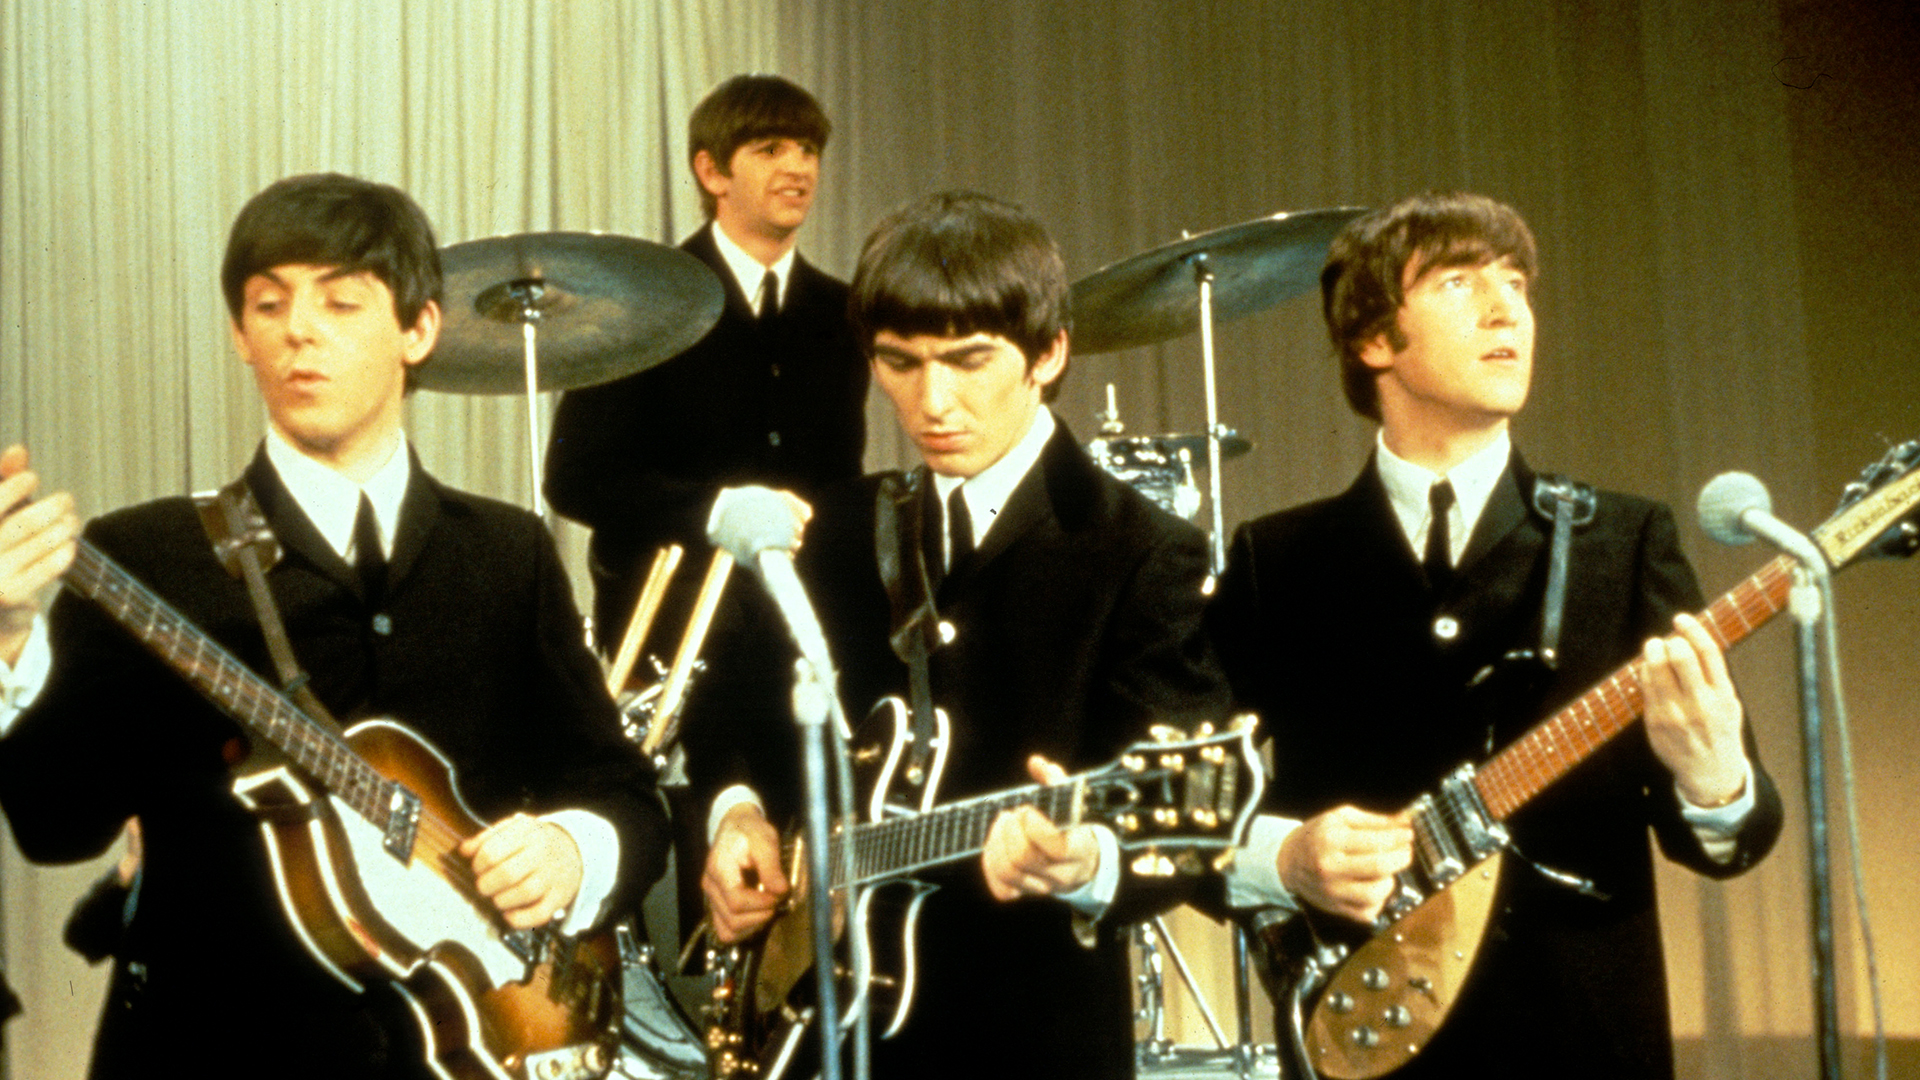 Los Beatles actuando en el escenario, alrededor de 1963. De izquierda a derecha: Paul McCartney, Ringo Starr, George Harrison (1943 - 2001) y John Lennon (1940 - 1980). (Foto de King Collection/Avalon/Getty Images)